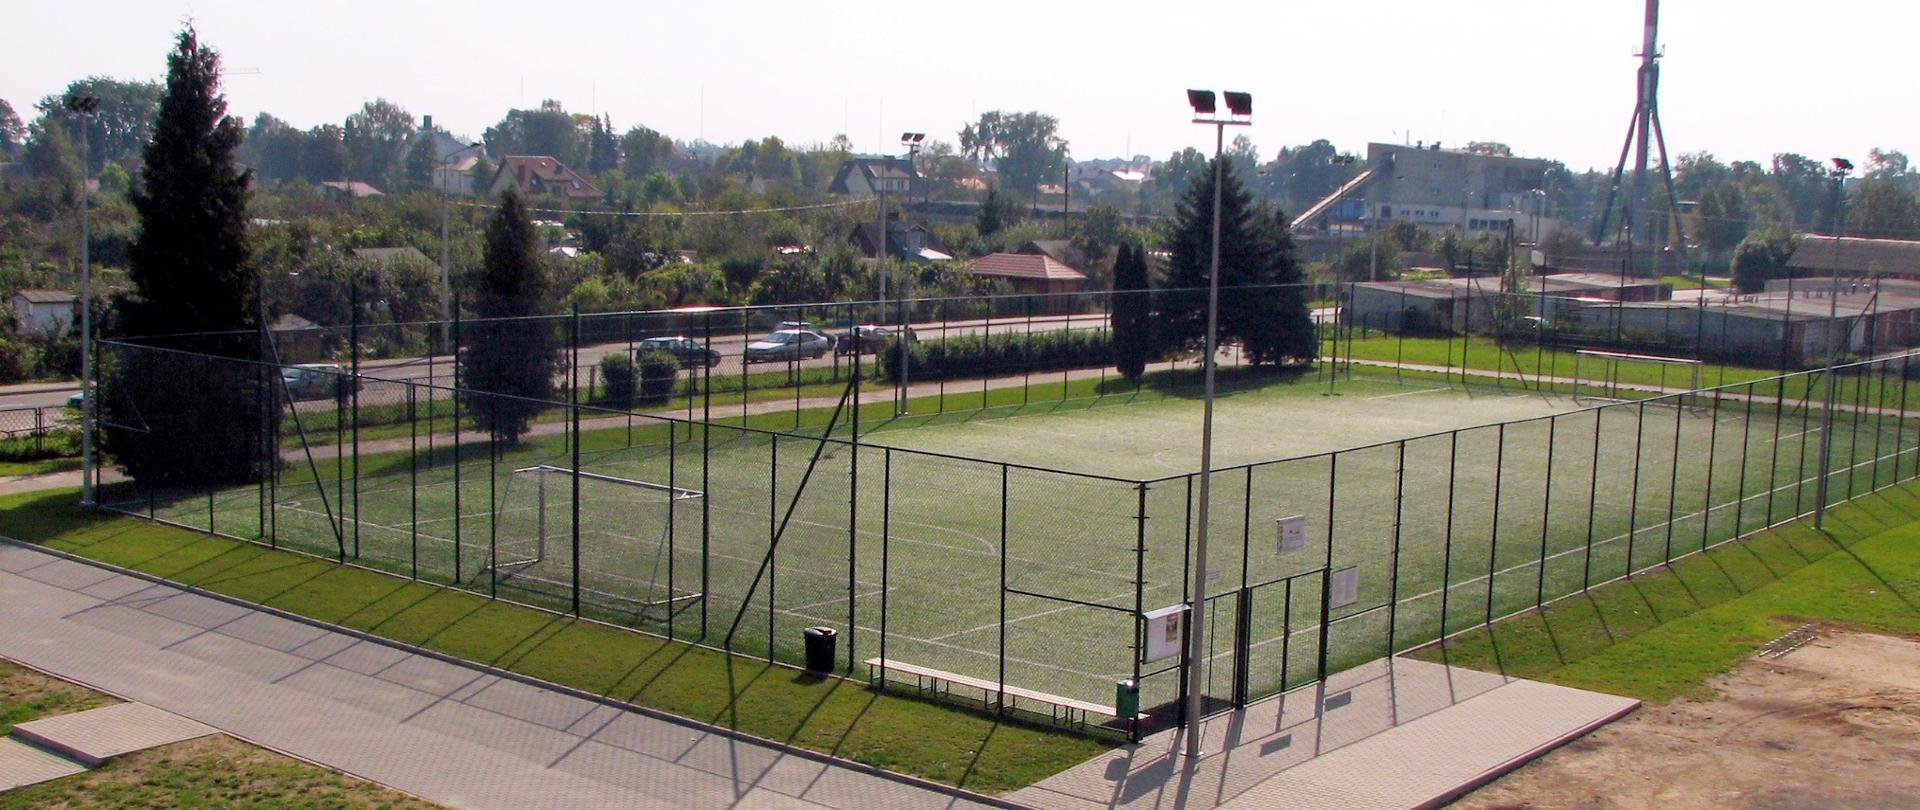 Widok na boisko piłkarskie z okna sąsiedniej szkoły